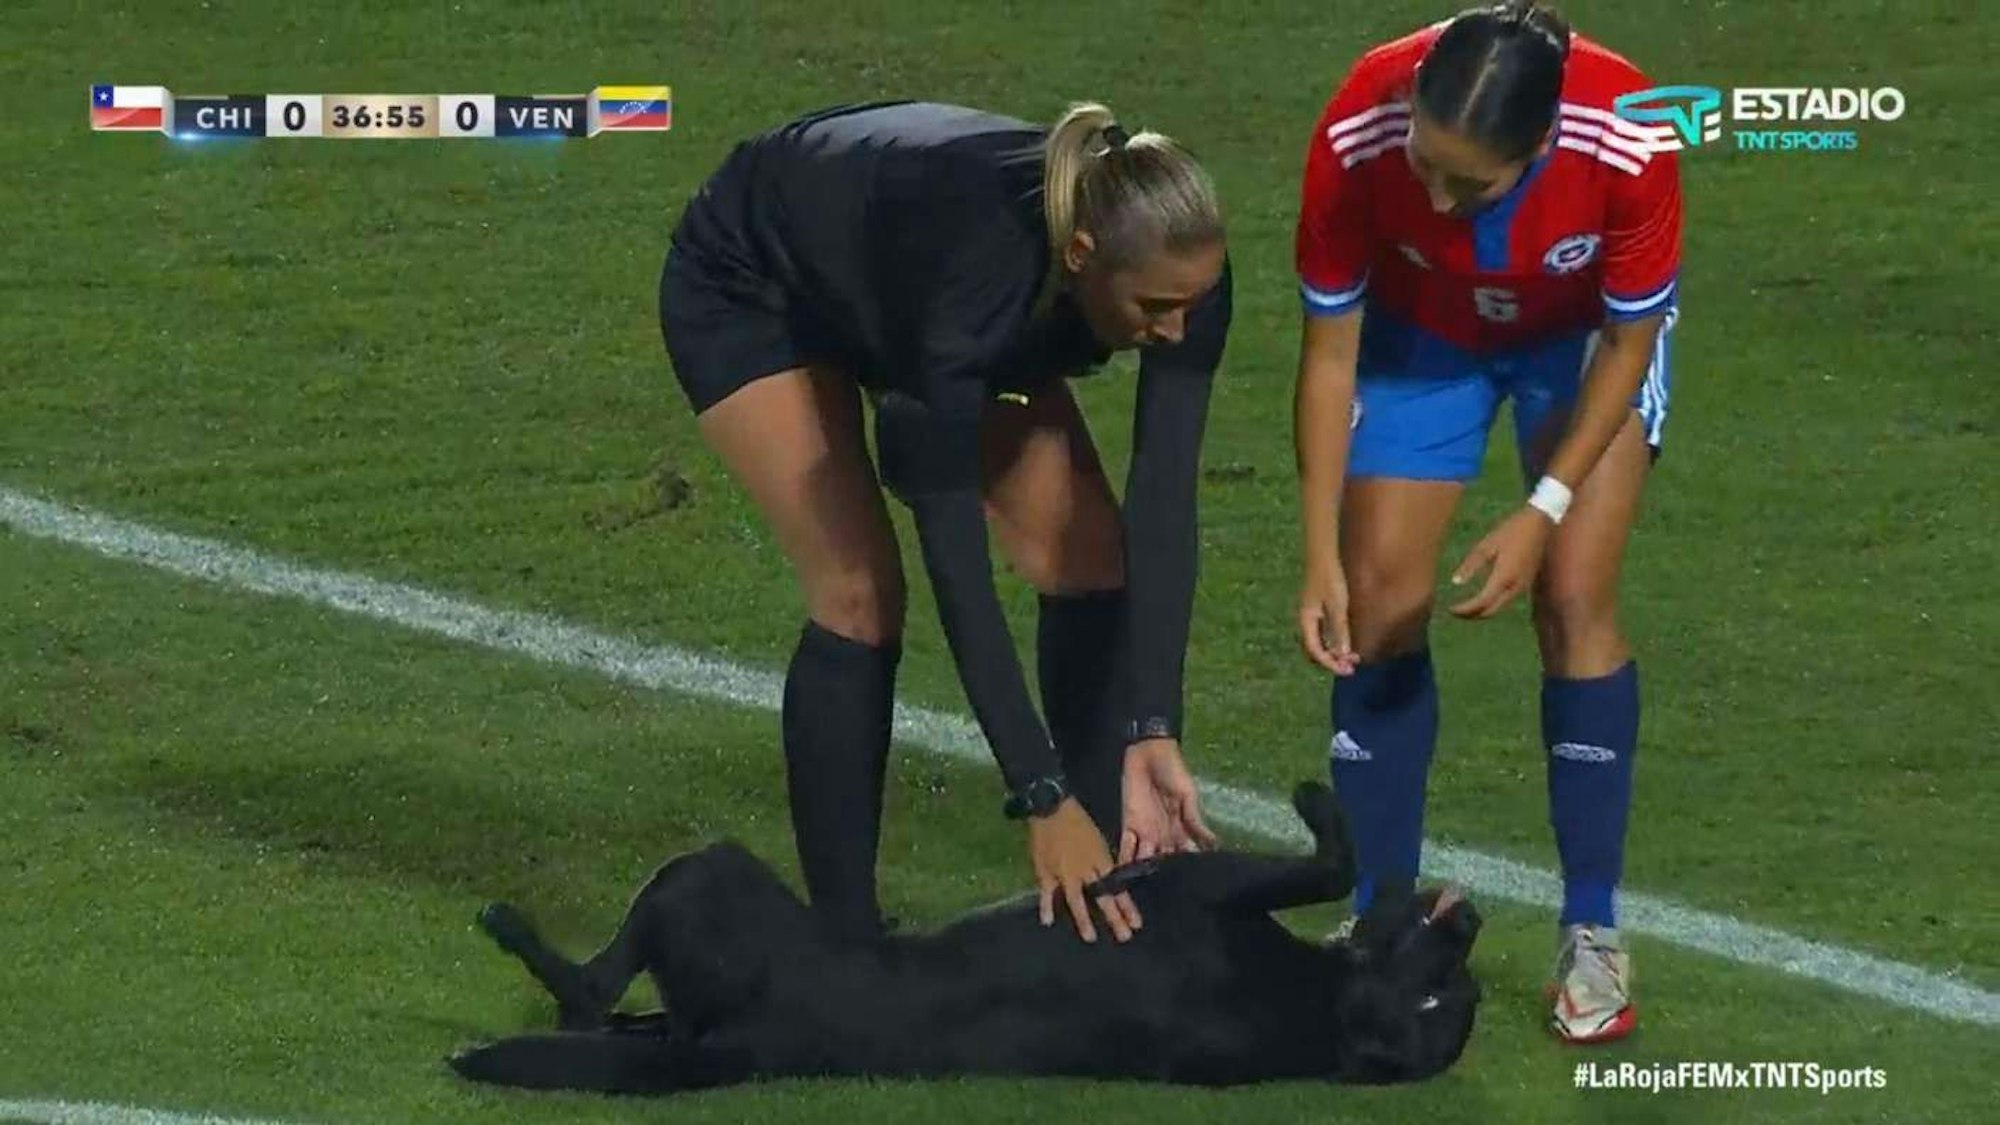 Die Schiedsrichterin und eine chilenische Spielerin kümmern sich liebevoll um einen Hund, der als Flitzer unterwegs ist.